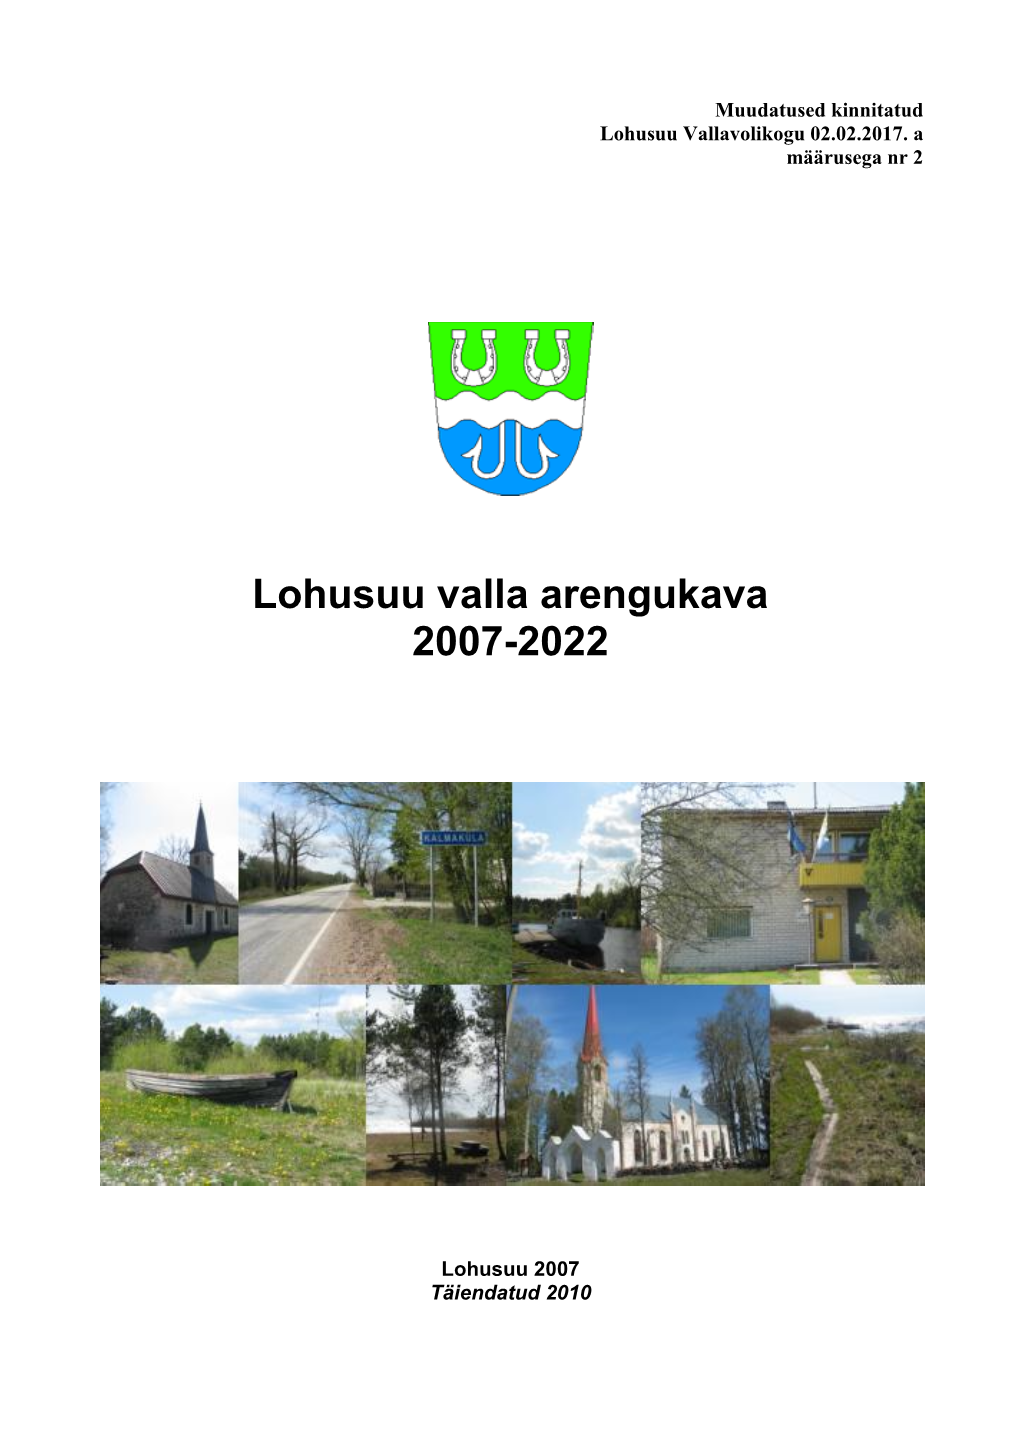 Lohusuu Valla Arengukava 2007-2022